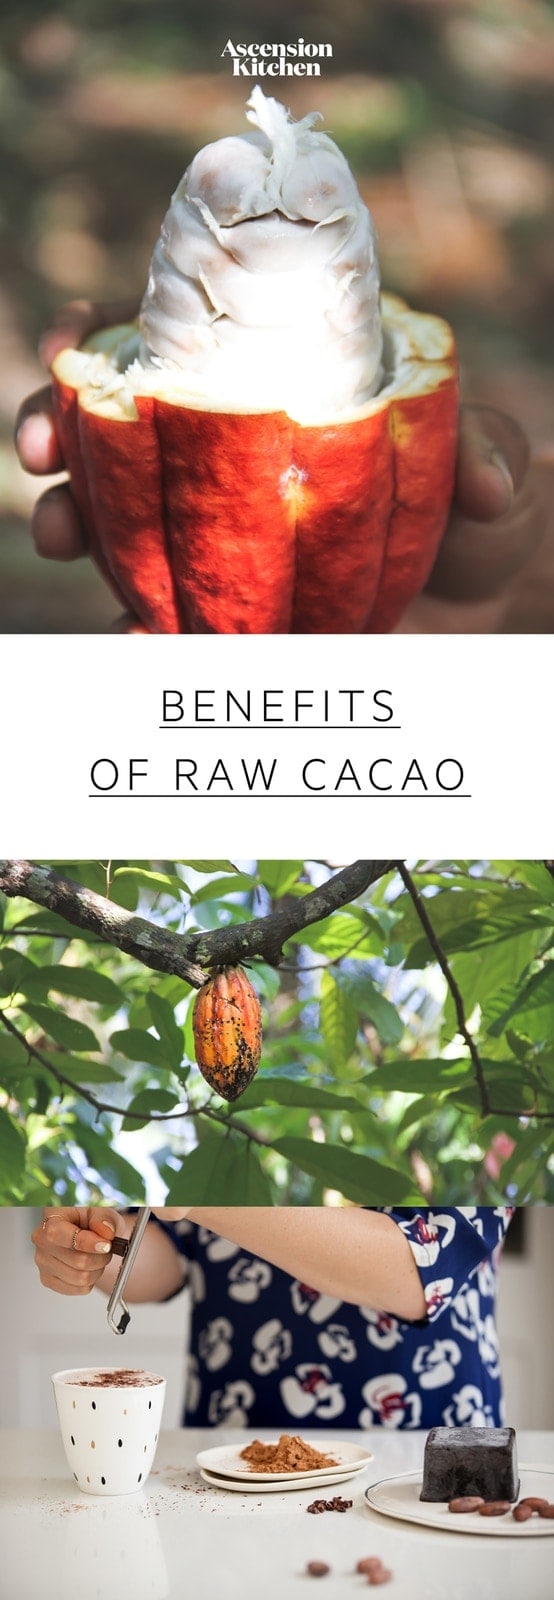 カカオの栄養健康上の利点：生のカカオがココアとどのように異なるかを学びます。 #benefitscacao#cacaobenefits#cacaonutrition#cacaopowderbenefits#rawcacaopowder#cacaopowderrecipes#superfoods#AscensionKitchen